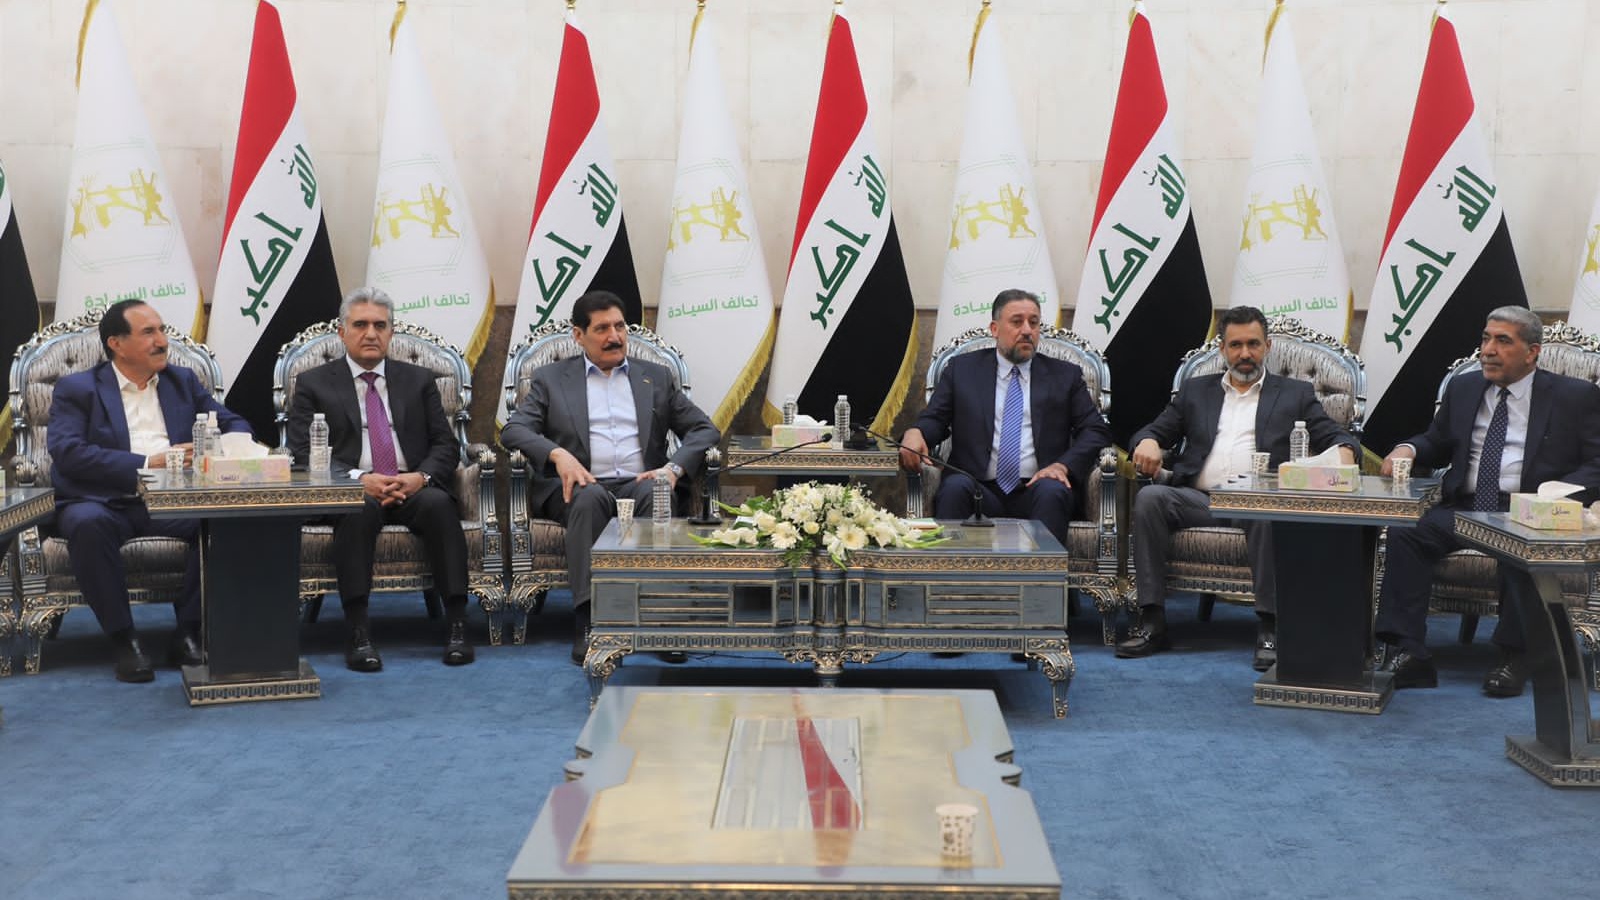 اجتماع قادة تحالف وطني الثلاثي في 25 مارس\ آذار الماضي لبحث التطورات السياسية في العراق (تويتر)